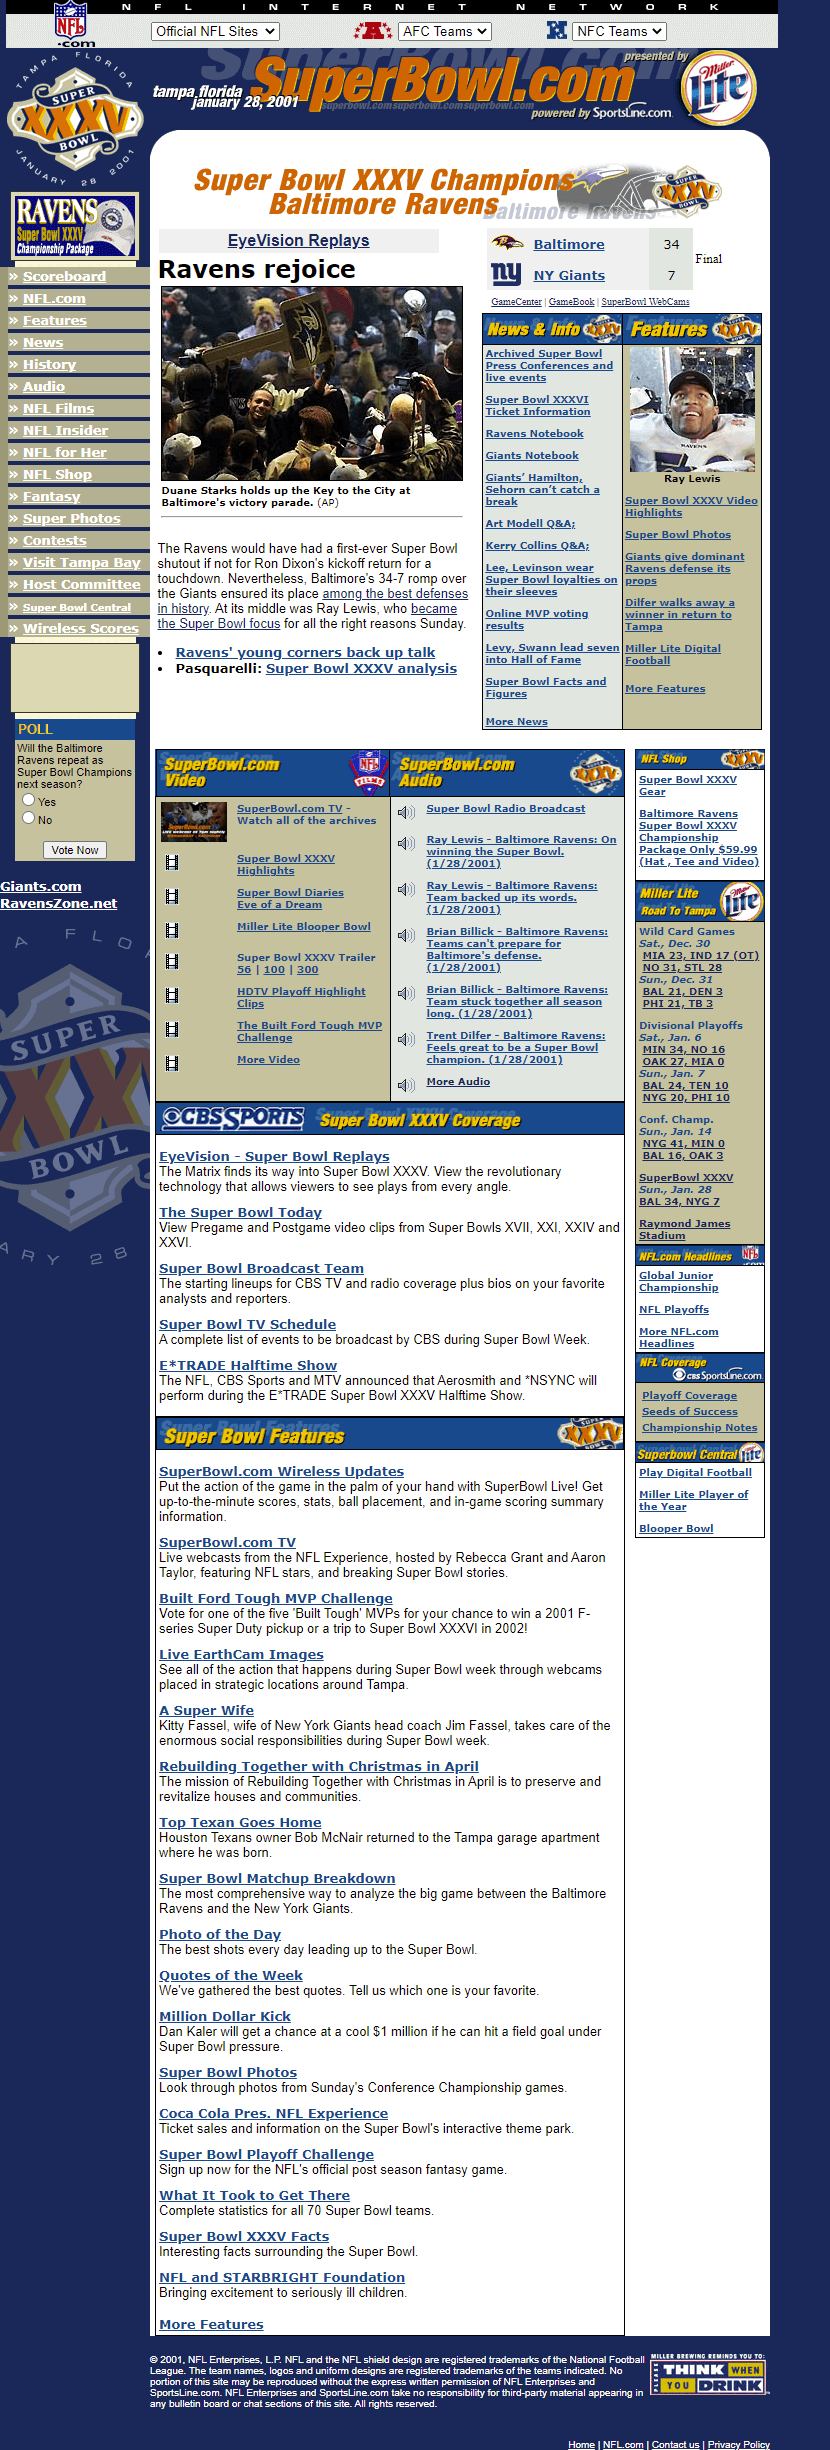 SuperBowl.com website in 2001